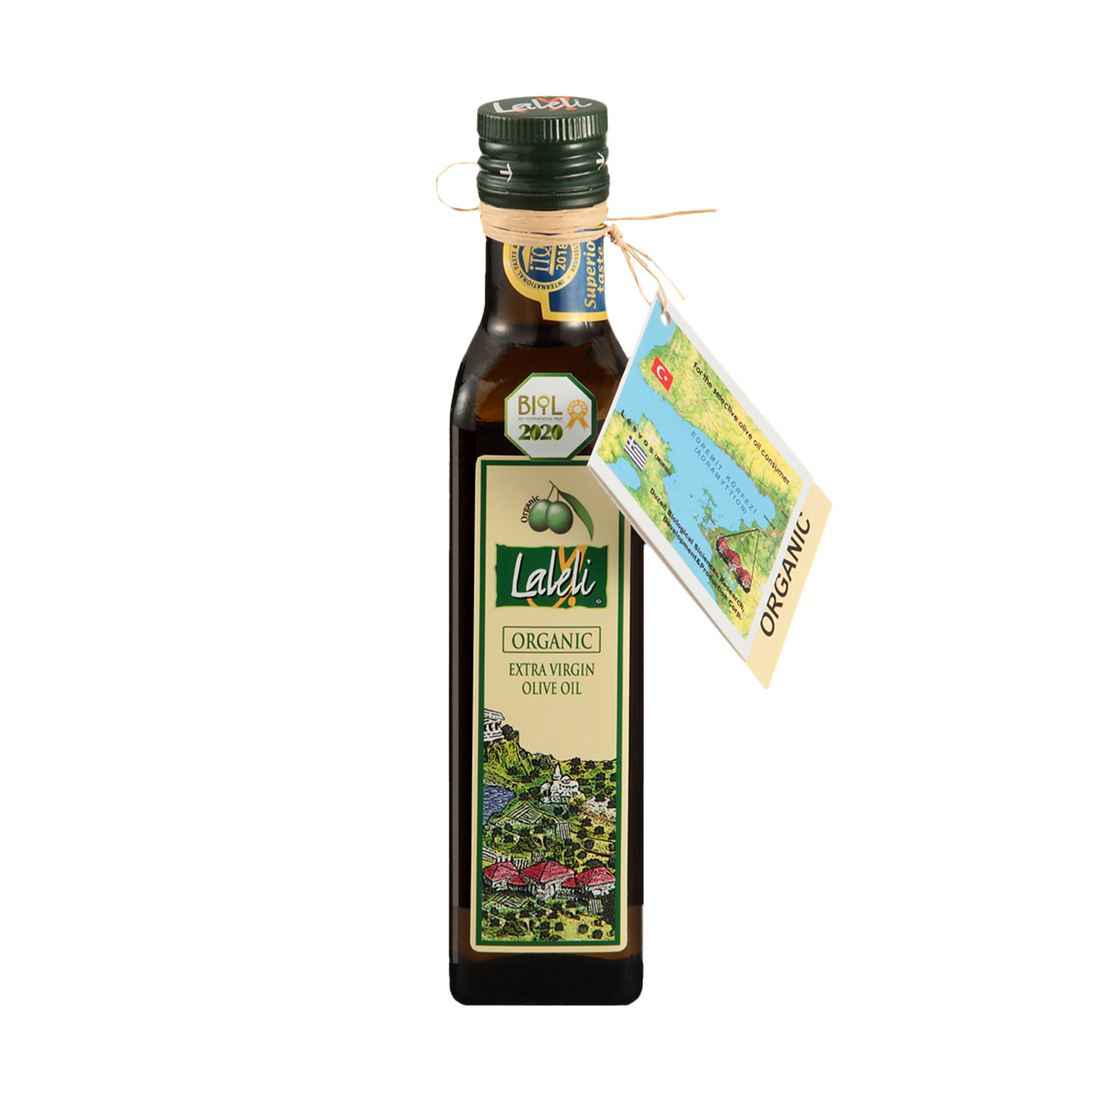 ラーレリ オーガニックエキストラバージンオリーブオイル 250ml | Laleli Organik Naturel Sizma Zeytinyagi | Organic Extra Virgin Olive Oil